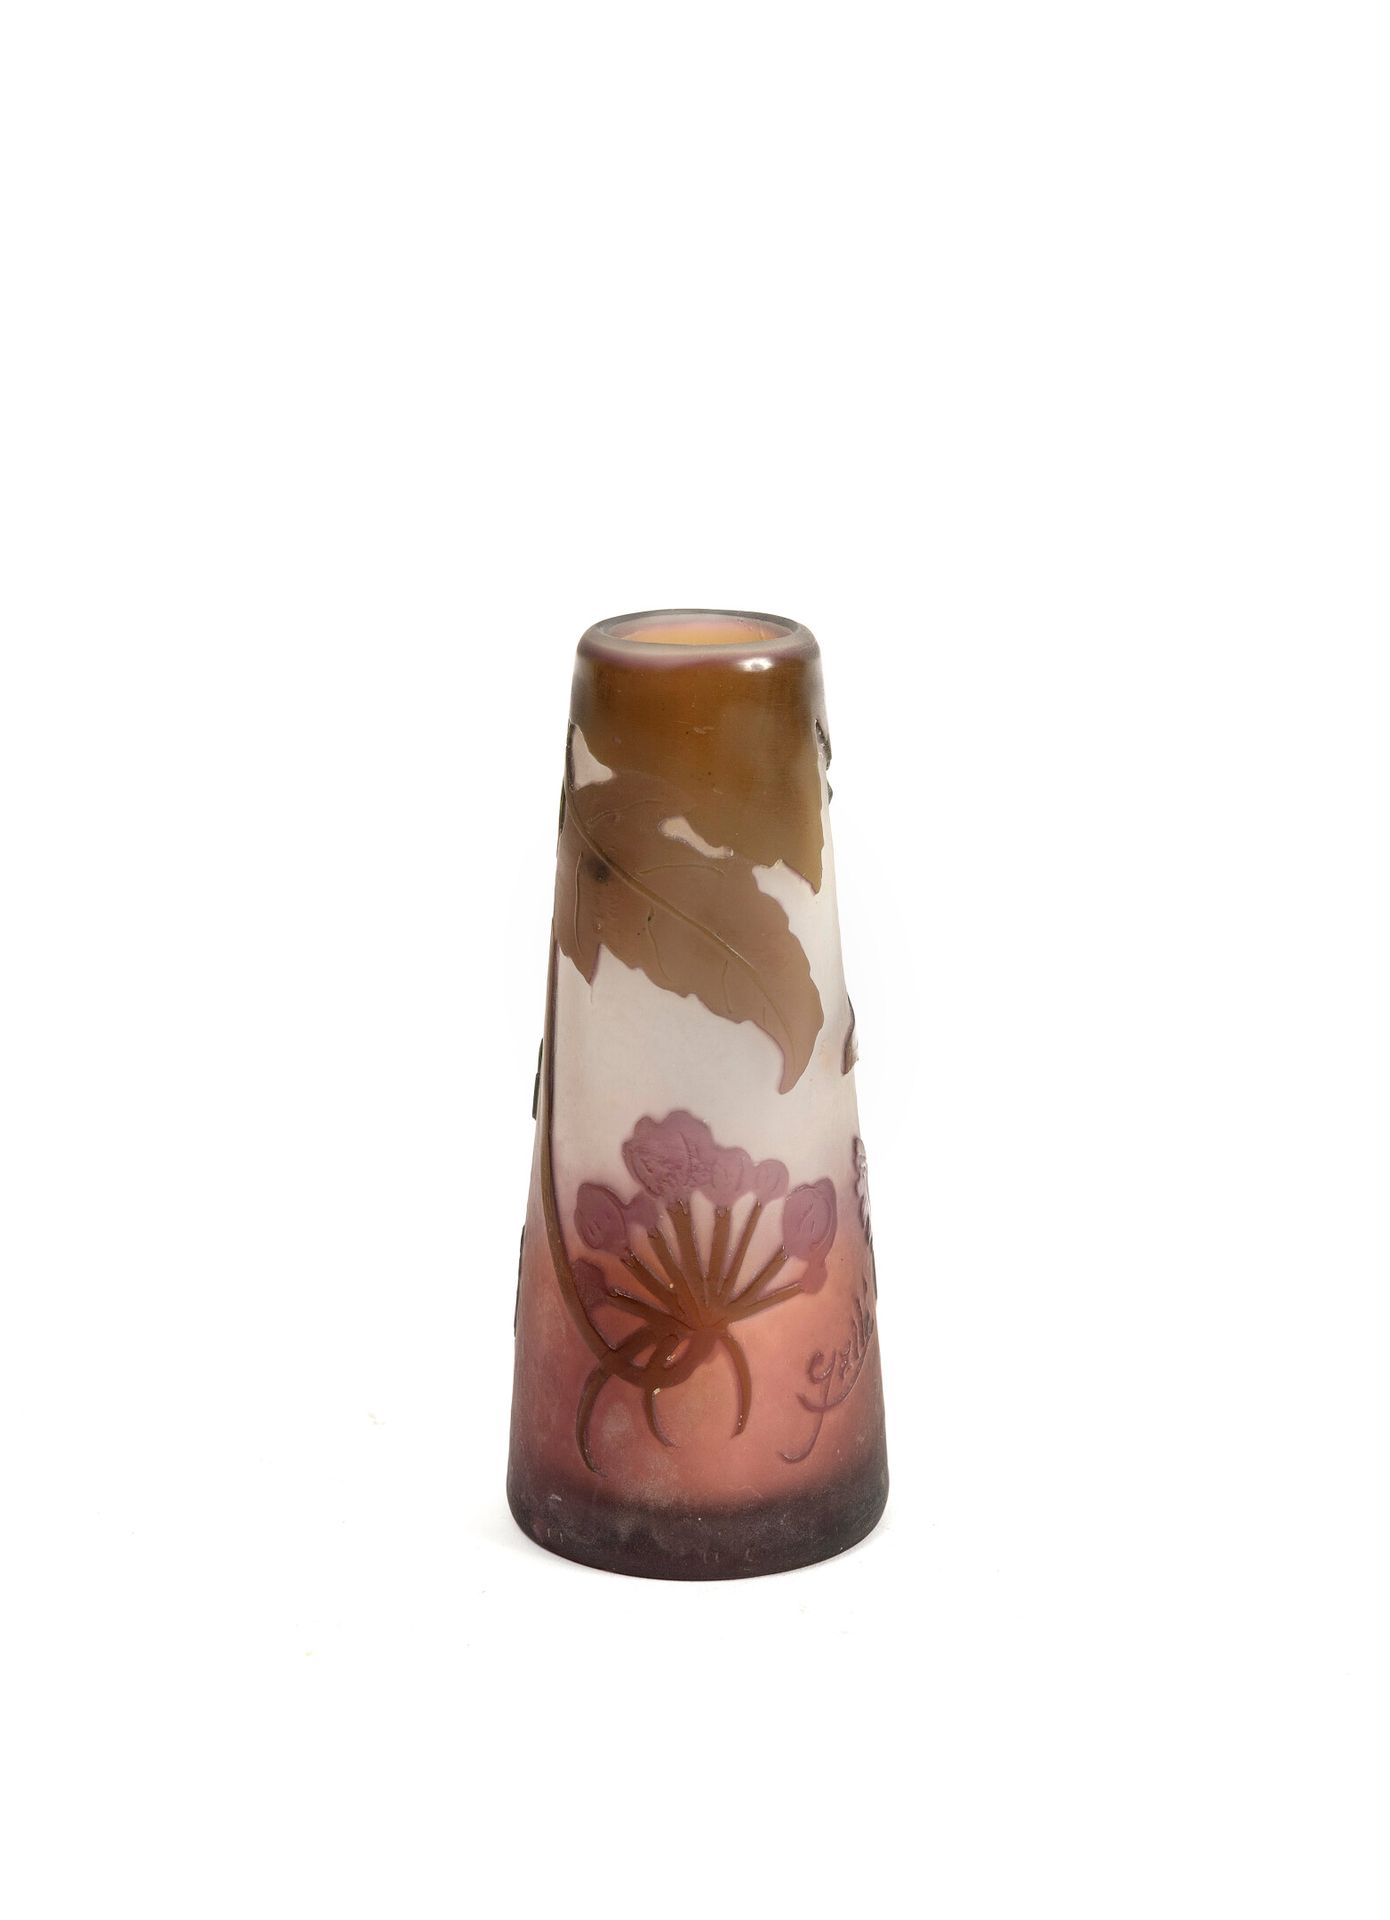 ÉTABLISSEMENTS GALLÉ Kleine kegelstumpfförmige Vase.

Proof in mauve und braun l&hellip;